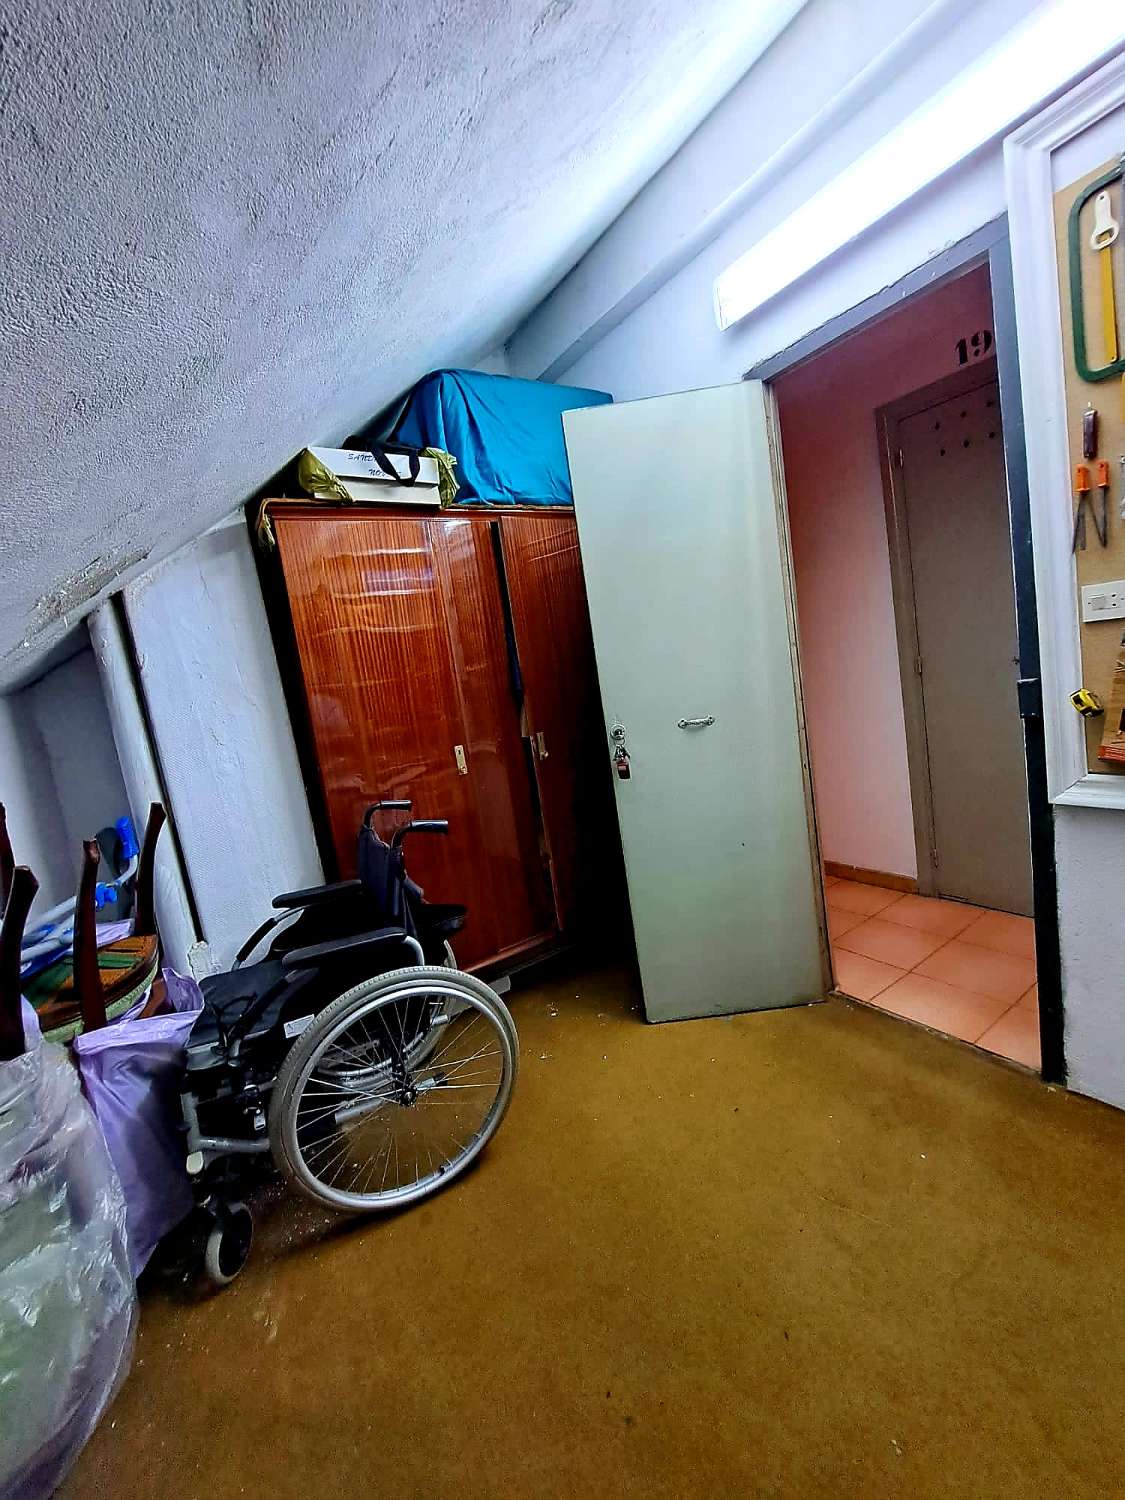 شقة 3 غرف نوم مع مرآب وغرفة تخزين في منطقة ستو دومينغو